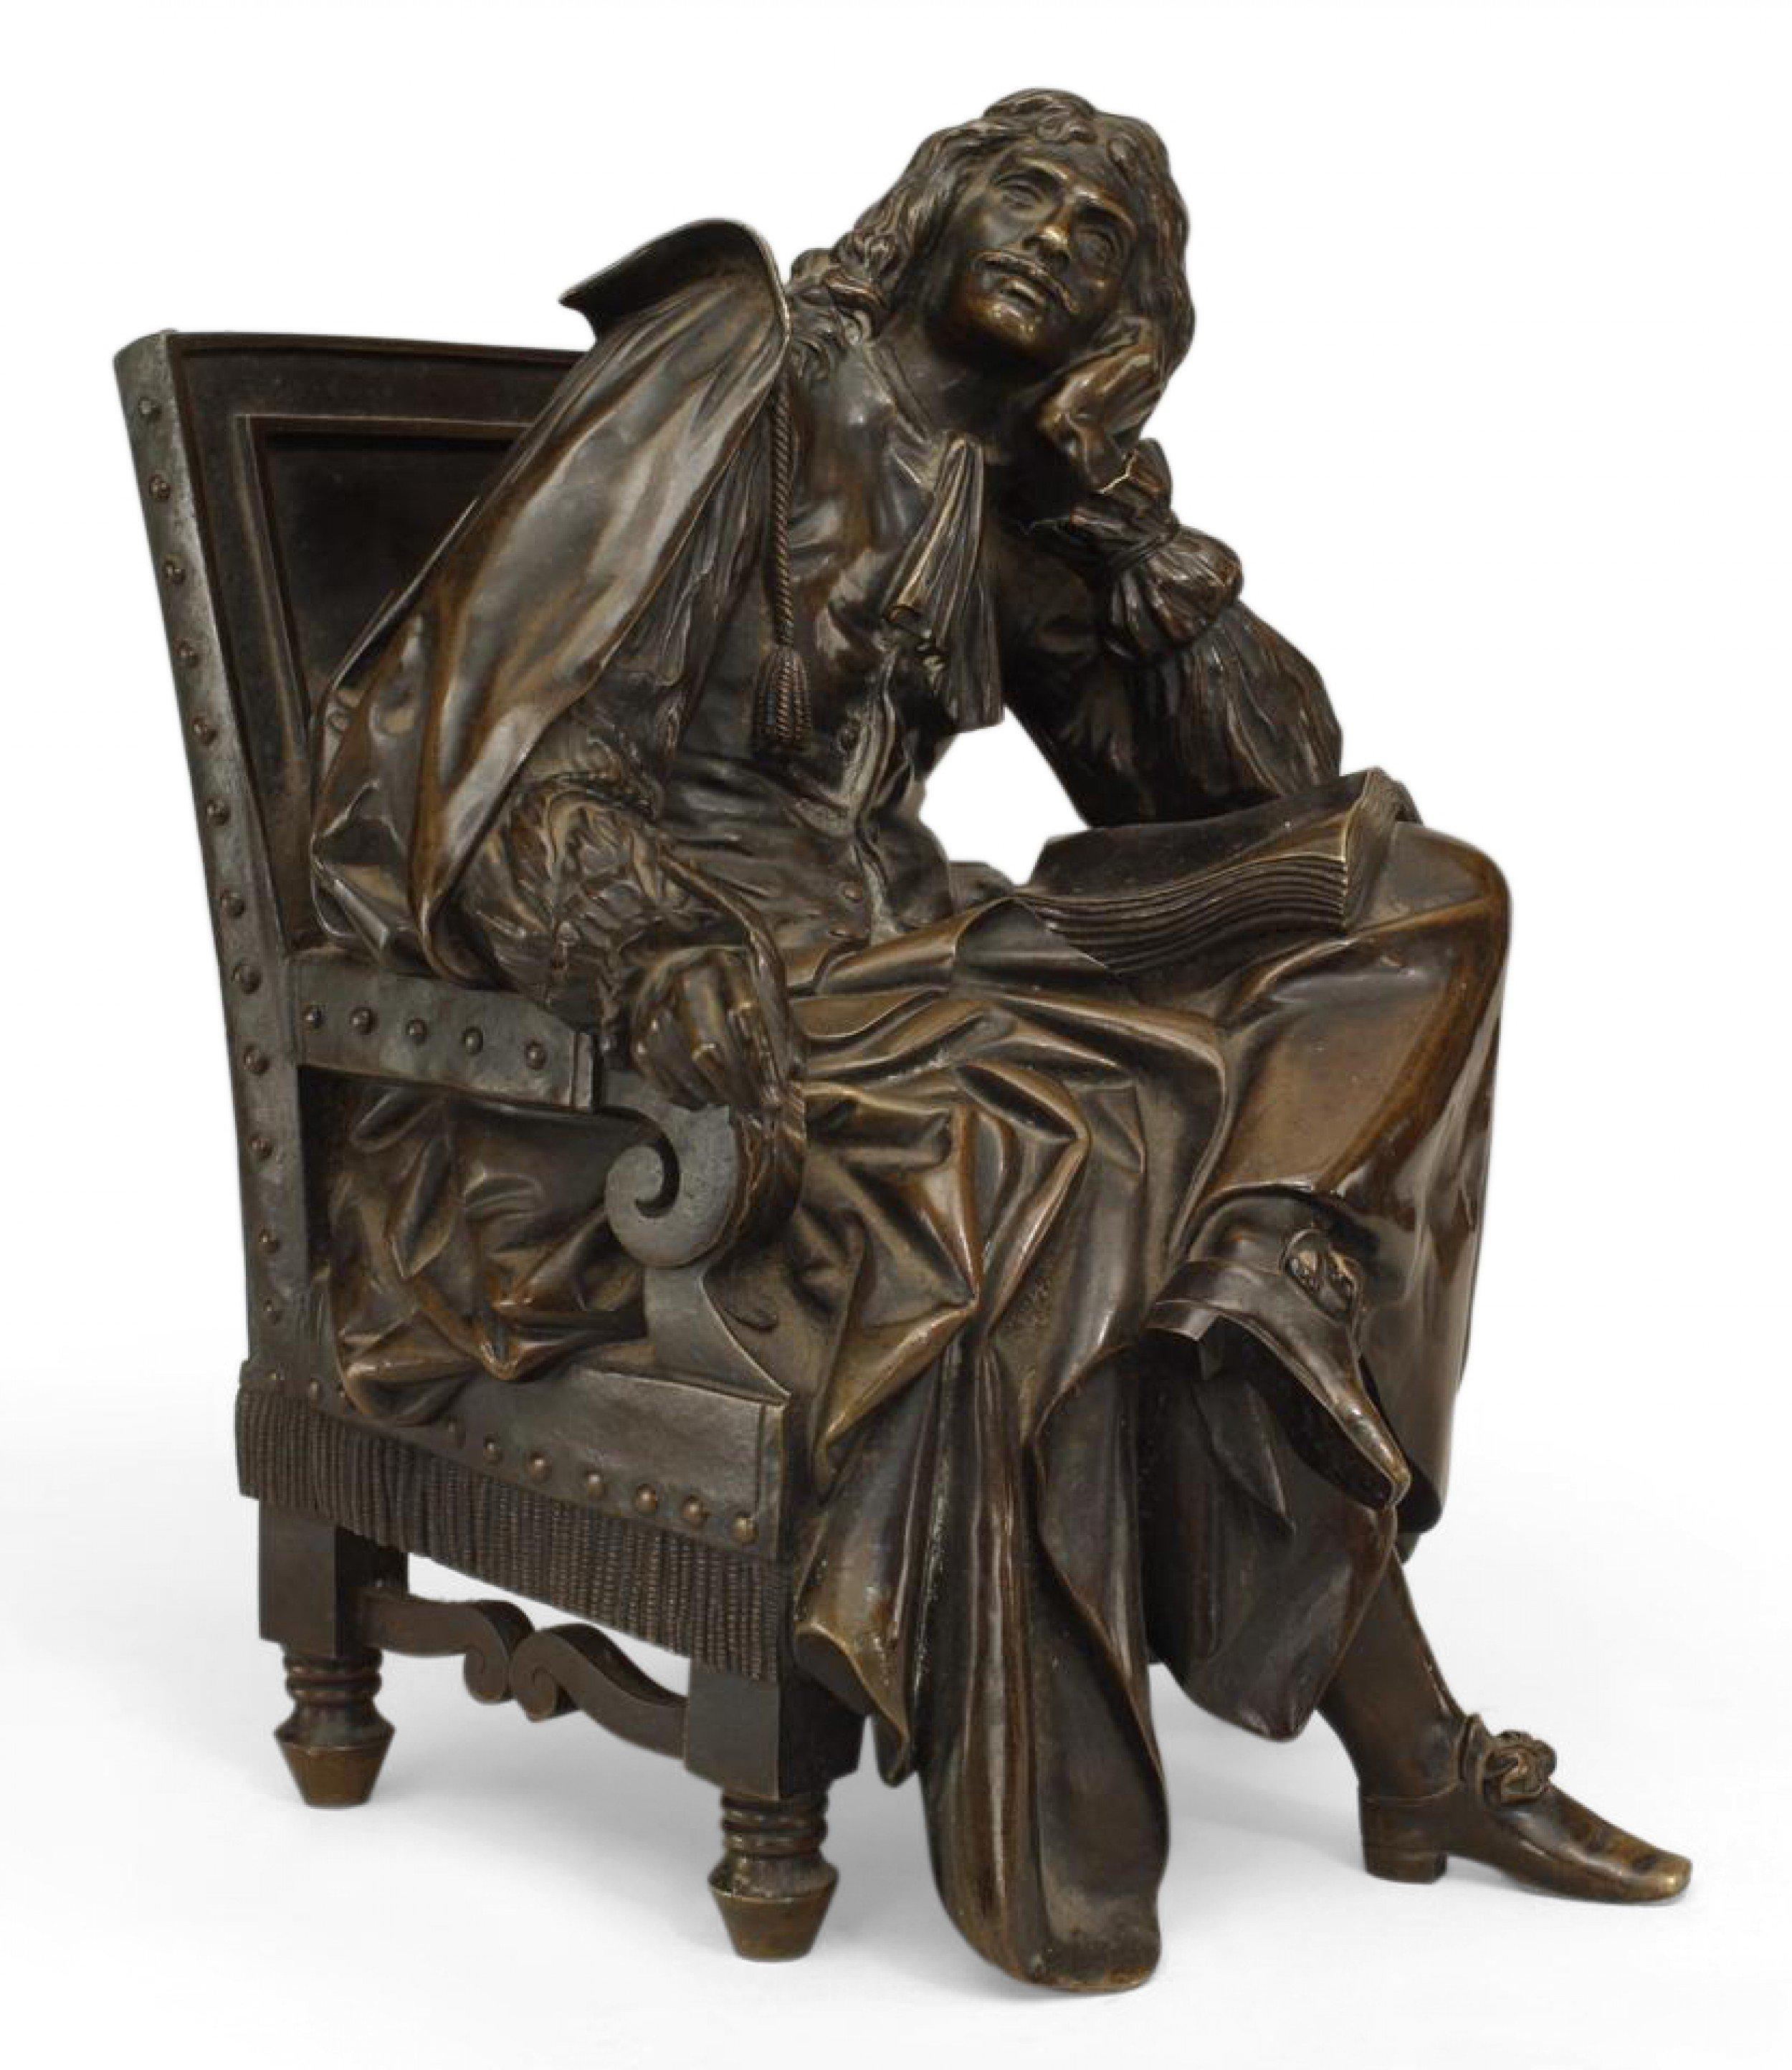 Bronze français (19ème siècle) représentant un personnage du 17ème siècle assis sur une chaise avec un livre et une plume (signé Pradier)
      